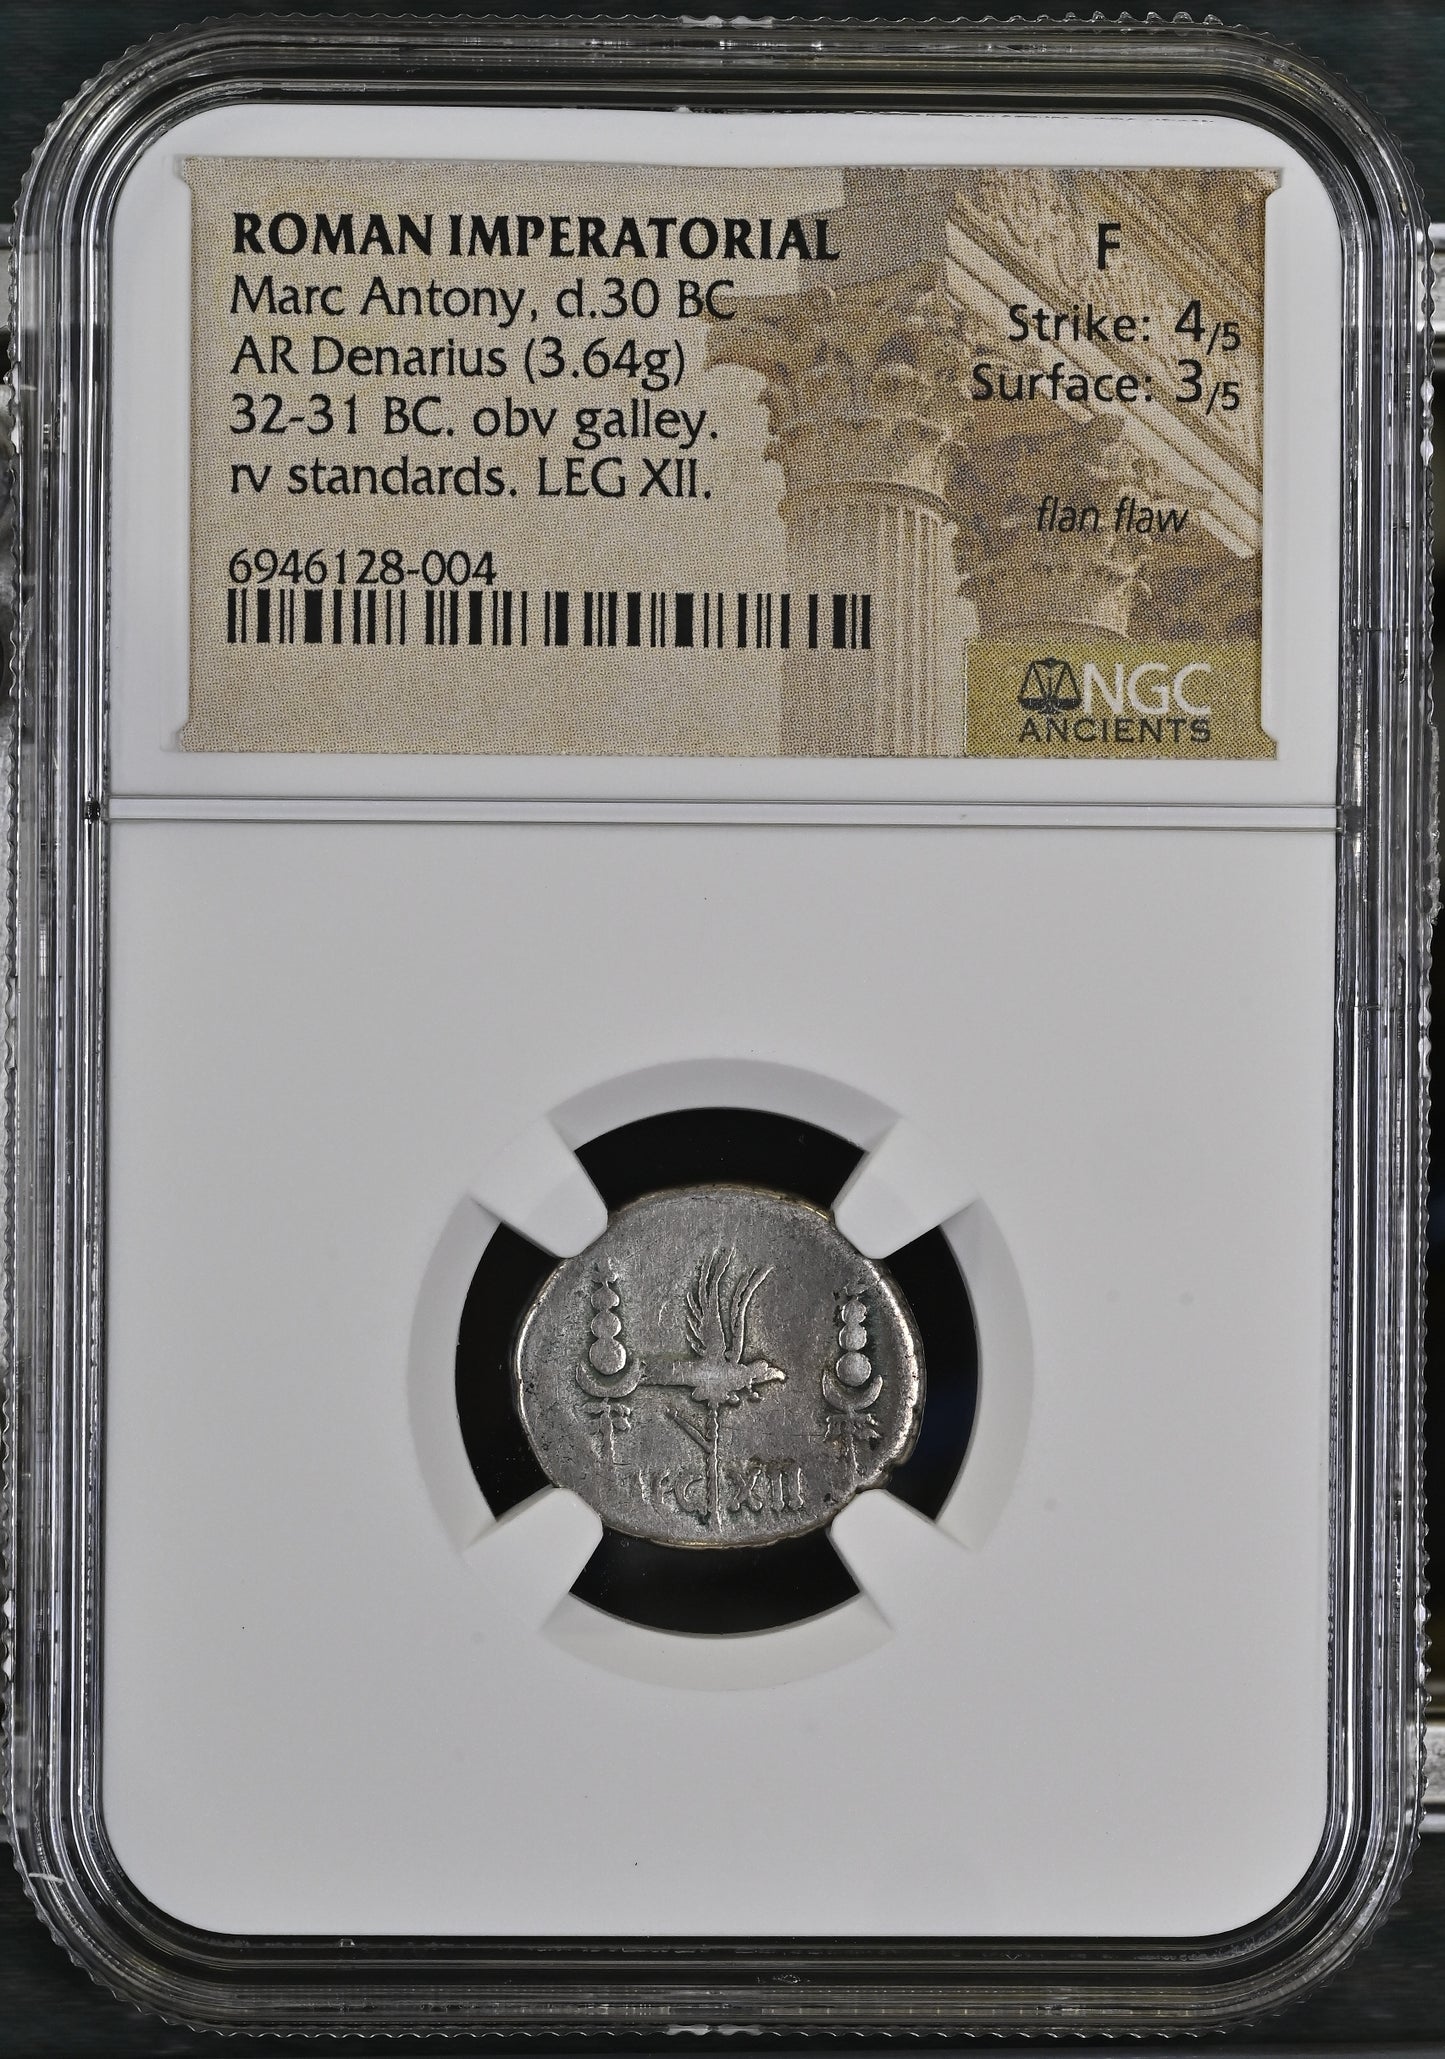 Roman Imperatorial - Marc Antony - Silver Denarius - NGC F - Crawf:41